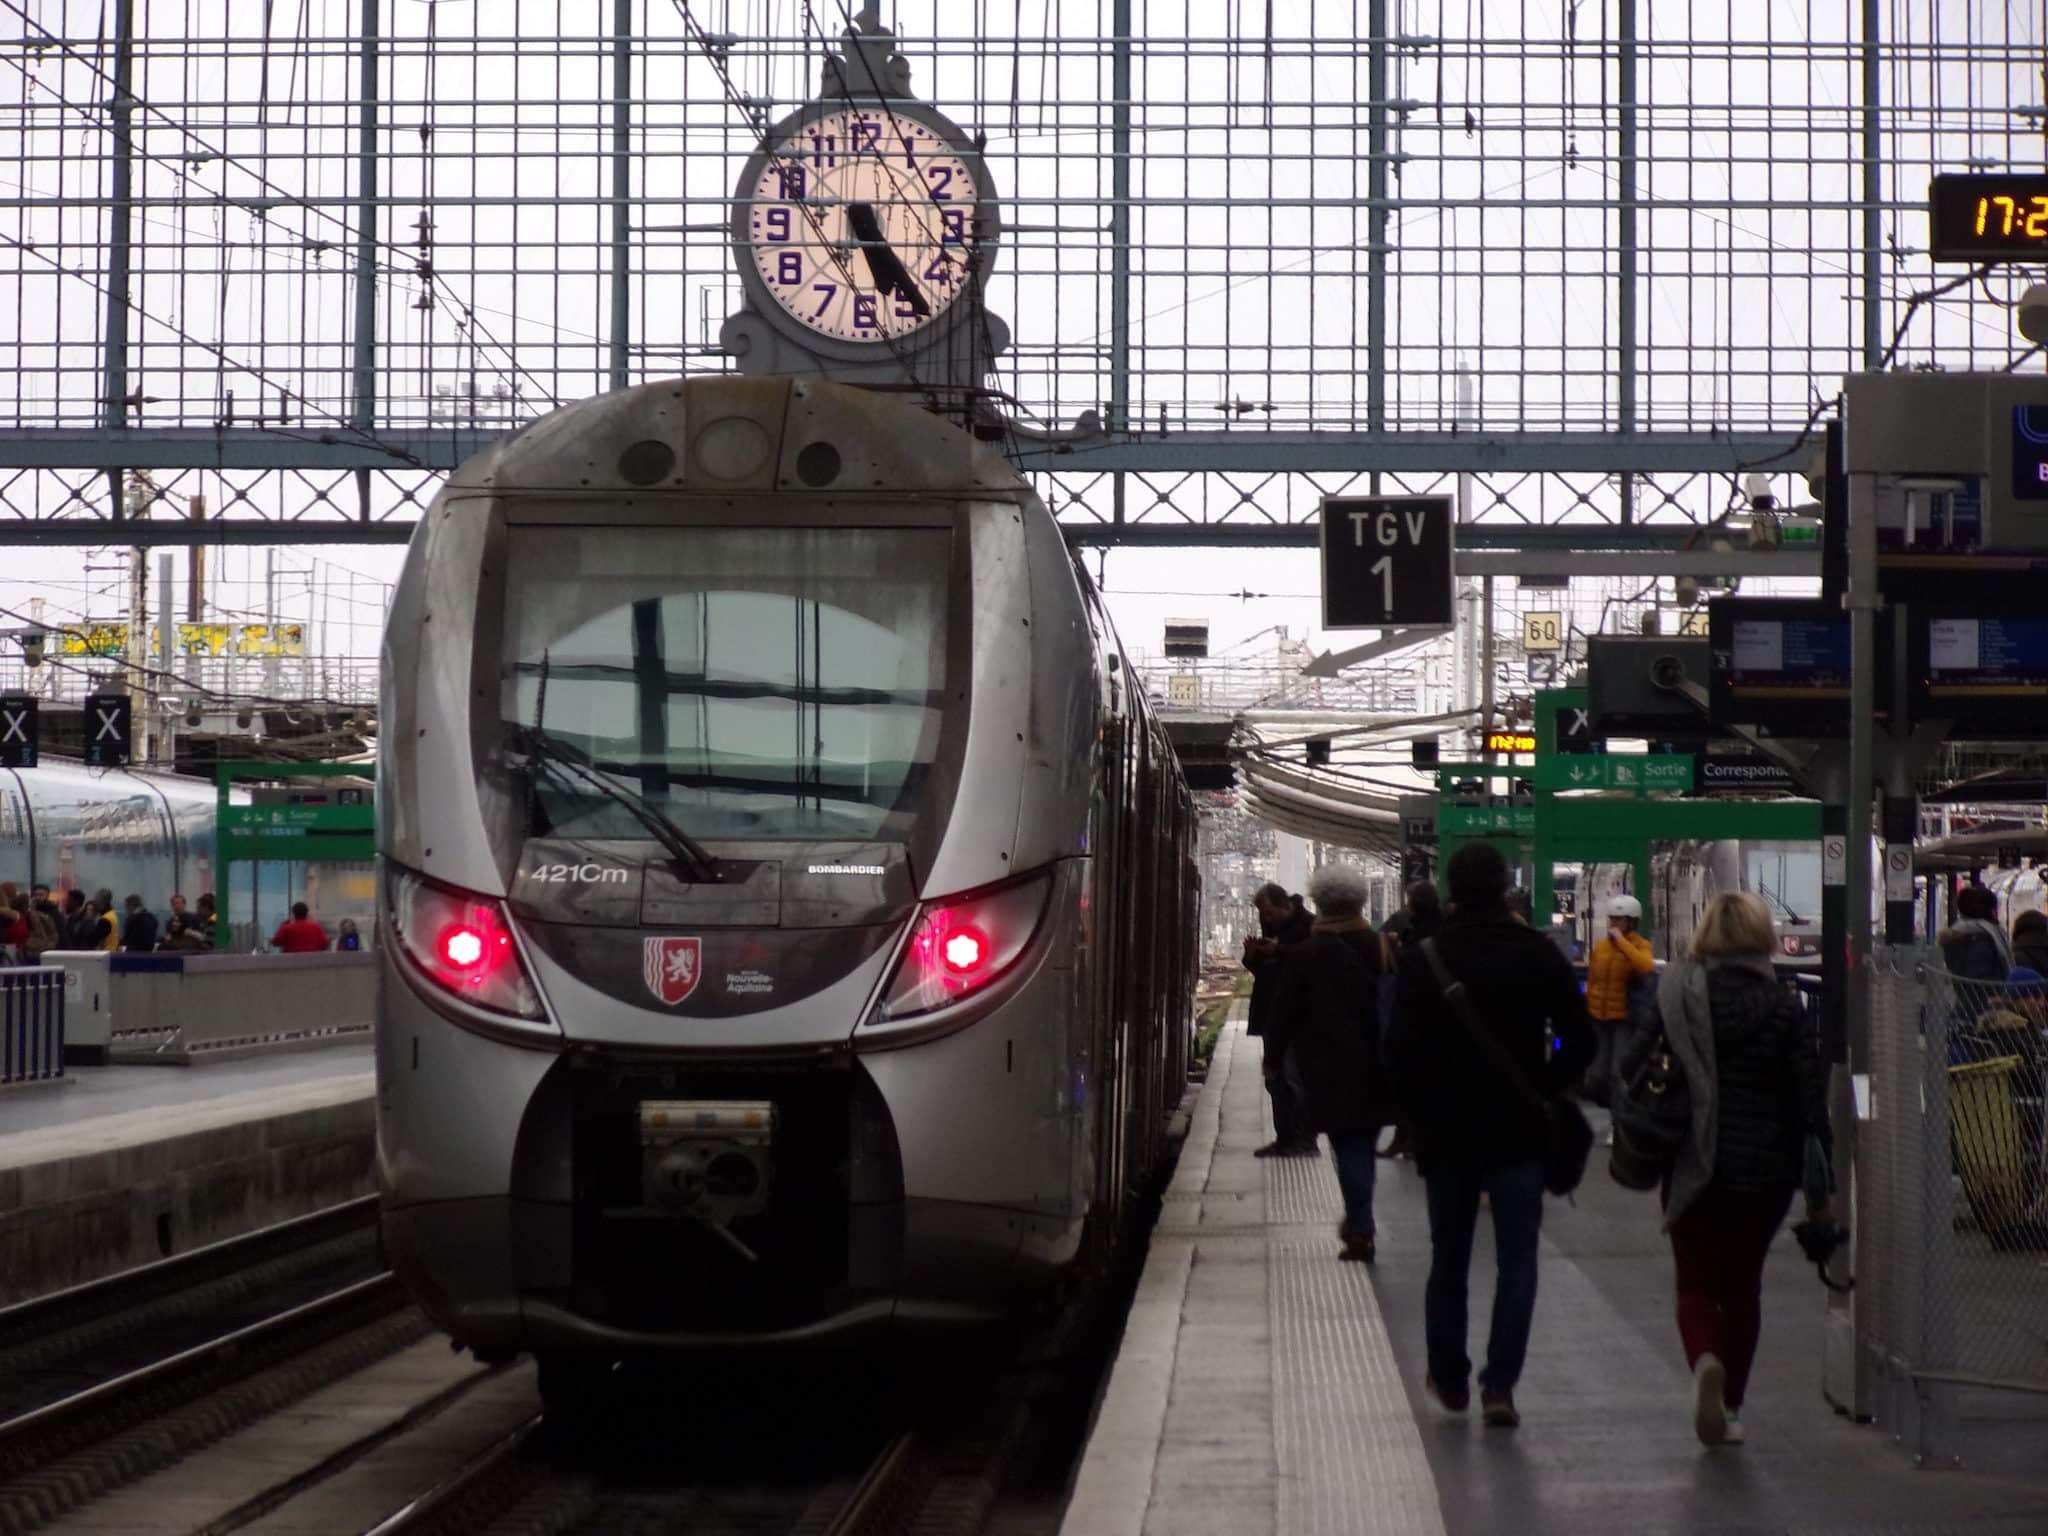 Première coopérative ferroviaire, Railcoop veut relancer la ligne Bordeaux-Lyon